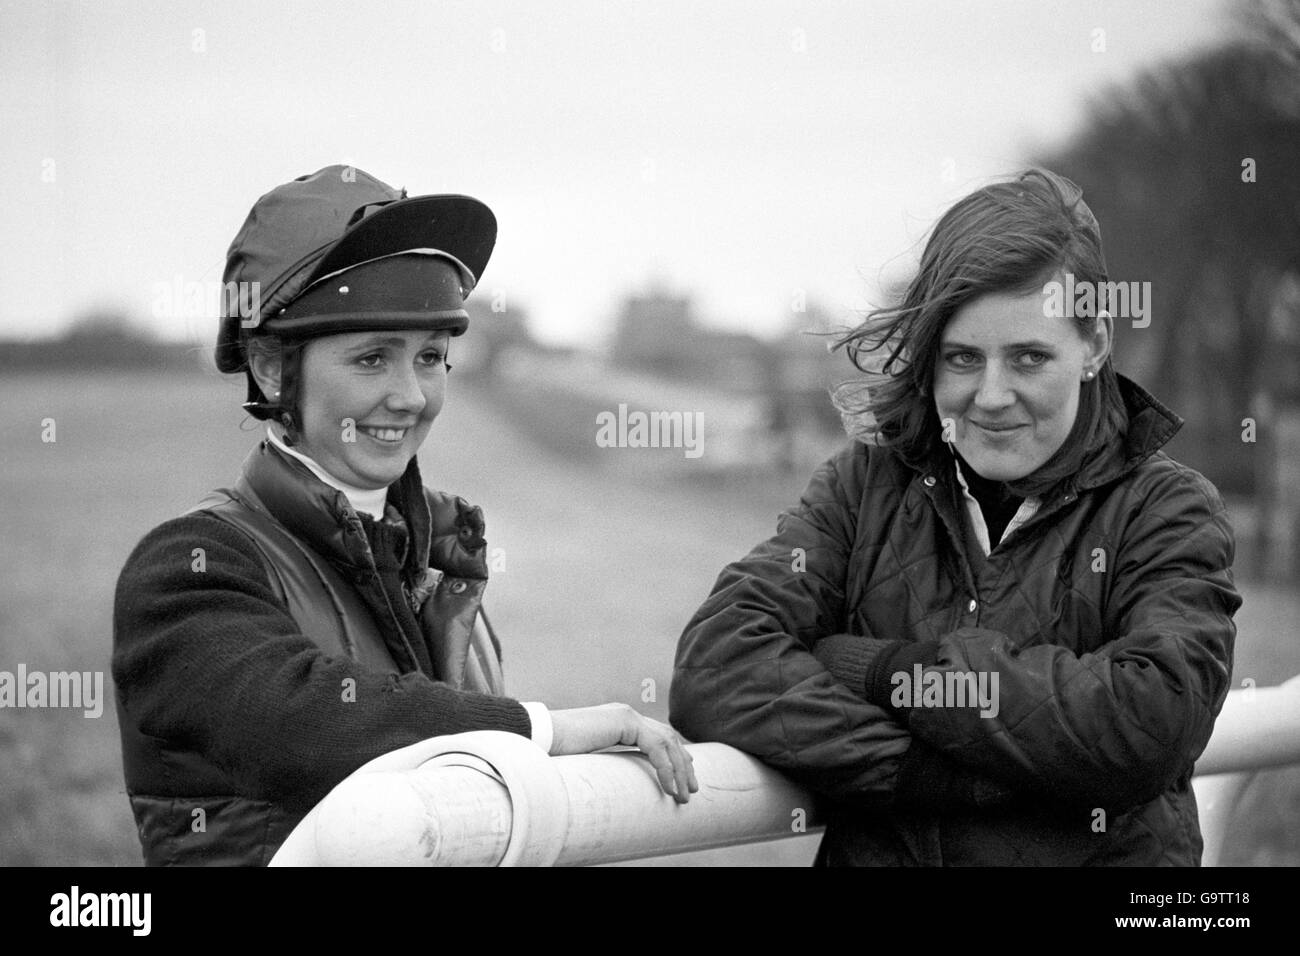 Hores Racing - Ladies Day in Aintree, Liverpool. Geraldine Rees (l.) und Charlotte Brew, die beiden Damen, die am heutigen Grand National in Aintree teilnehmen. Stockfoto